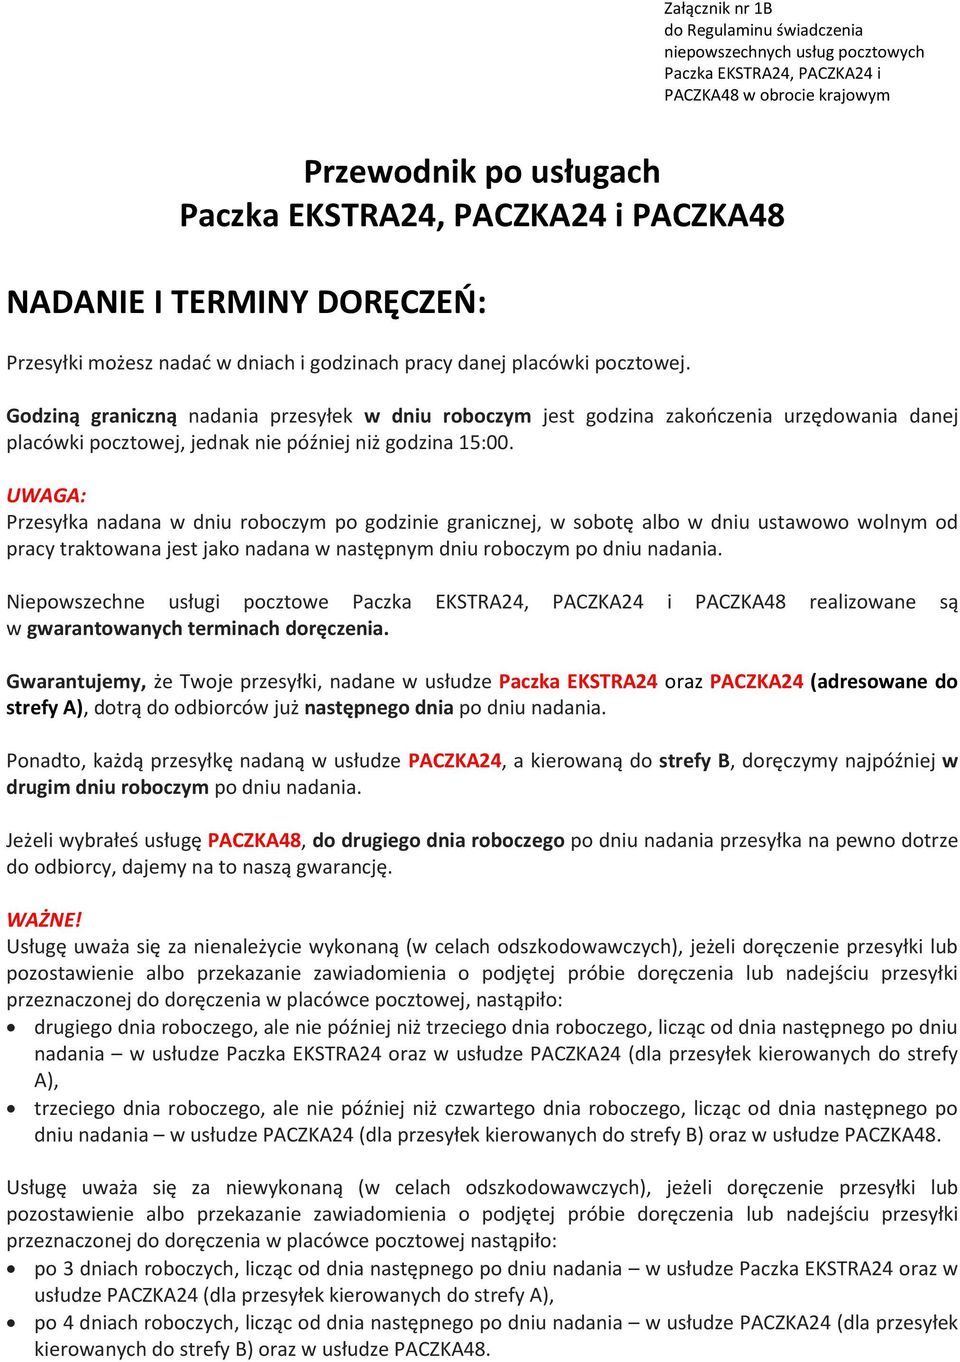 Przewodnik po usługach Paczka EKSTRA24, PACZKA24 i PACZKA48 - PDF Darmowe  pobieranie